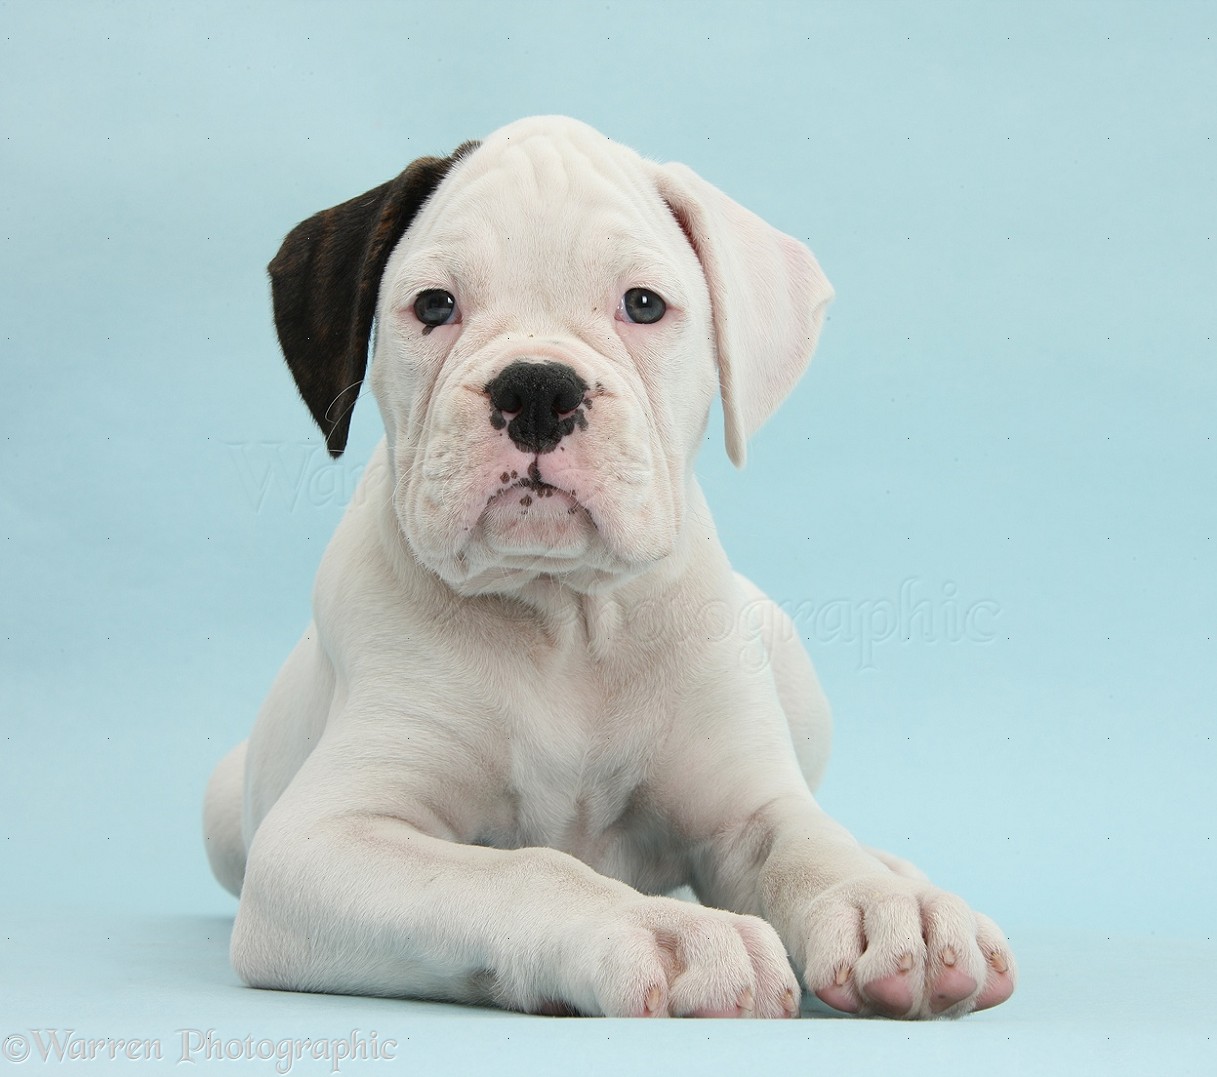 Dog: Black eared white Boxer puppy on blue background photo WP38645